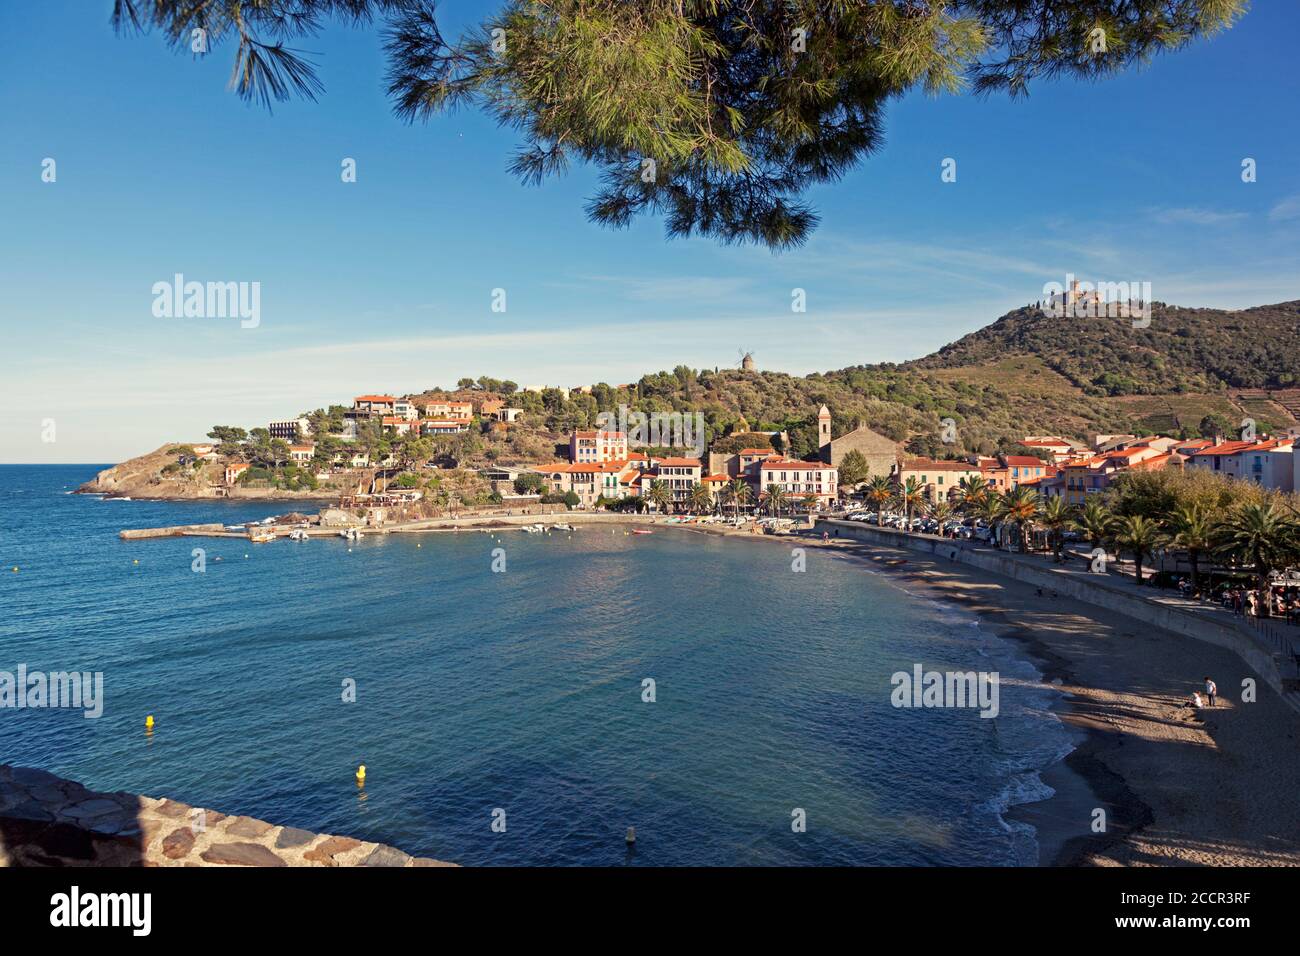 La station balnéaire pittoresque et le port de Collioure dans le sud de la France Banque D'Images